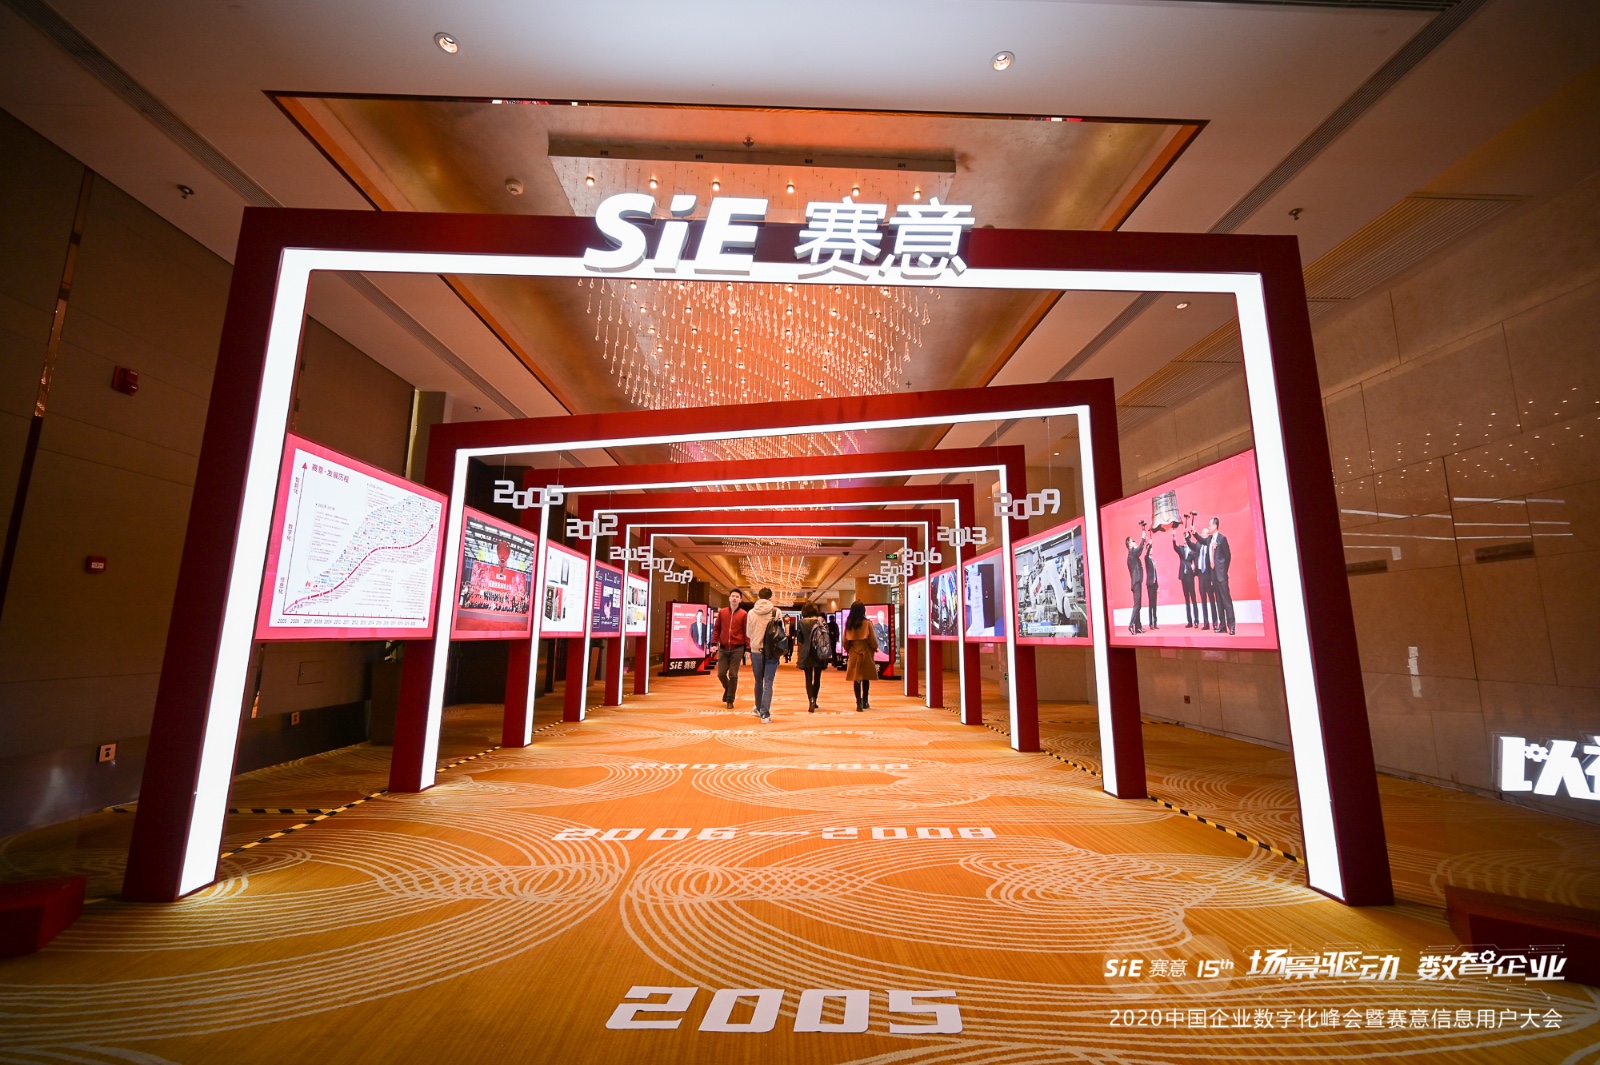 证券日报丨赛意信息举办2020中国企业数字化峰会 赋能企业数字化发展